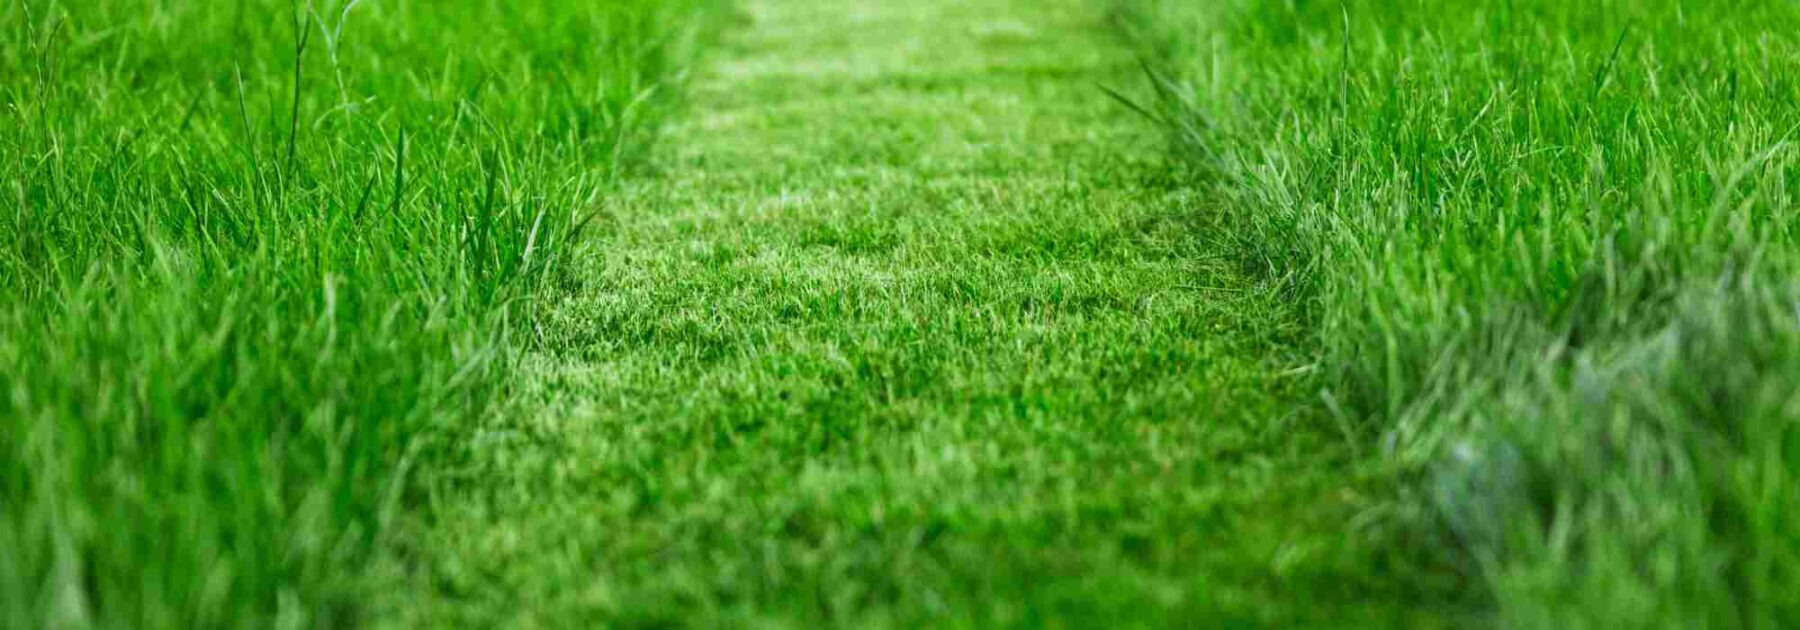 Entretien écologique de la pelouse : suivez notre guide pratique !